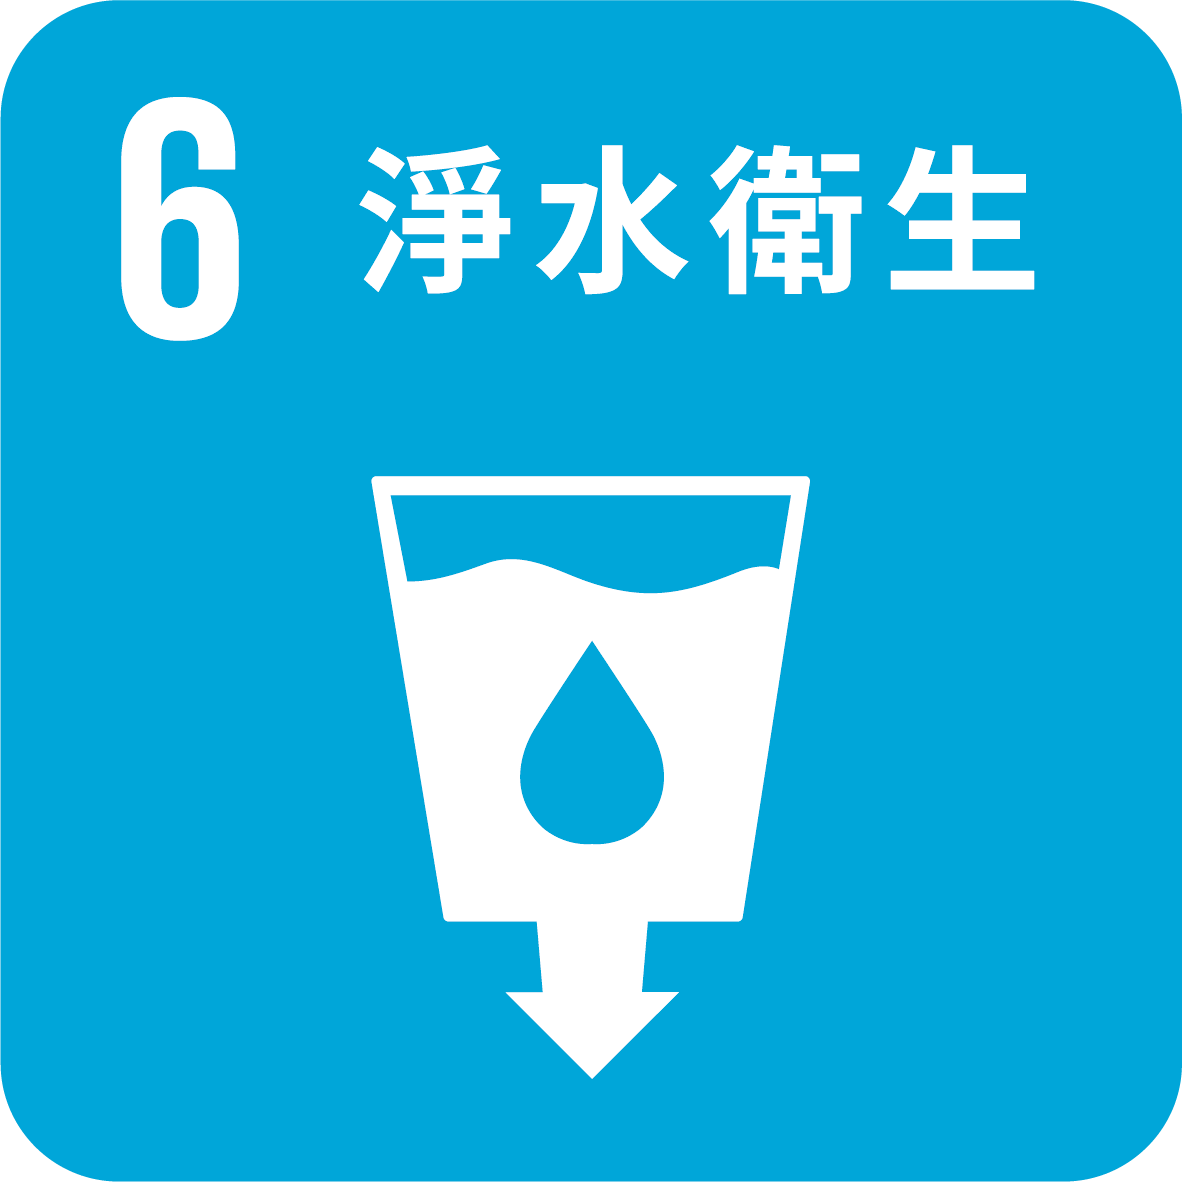 目標6_為所有人提供水資源衛生及進行永續管理